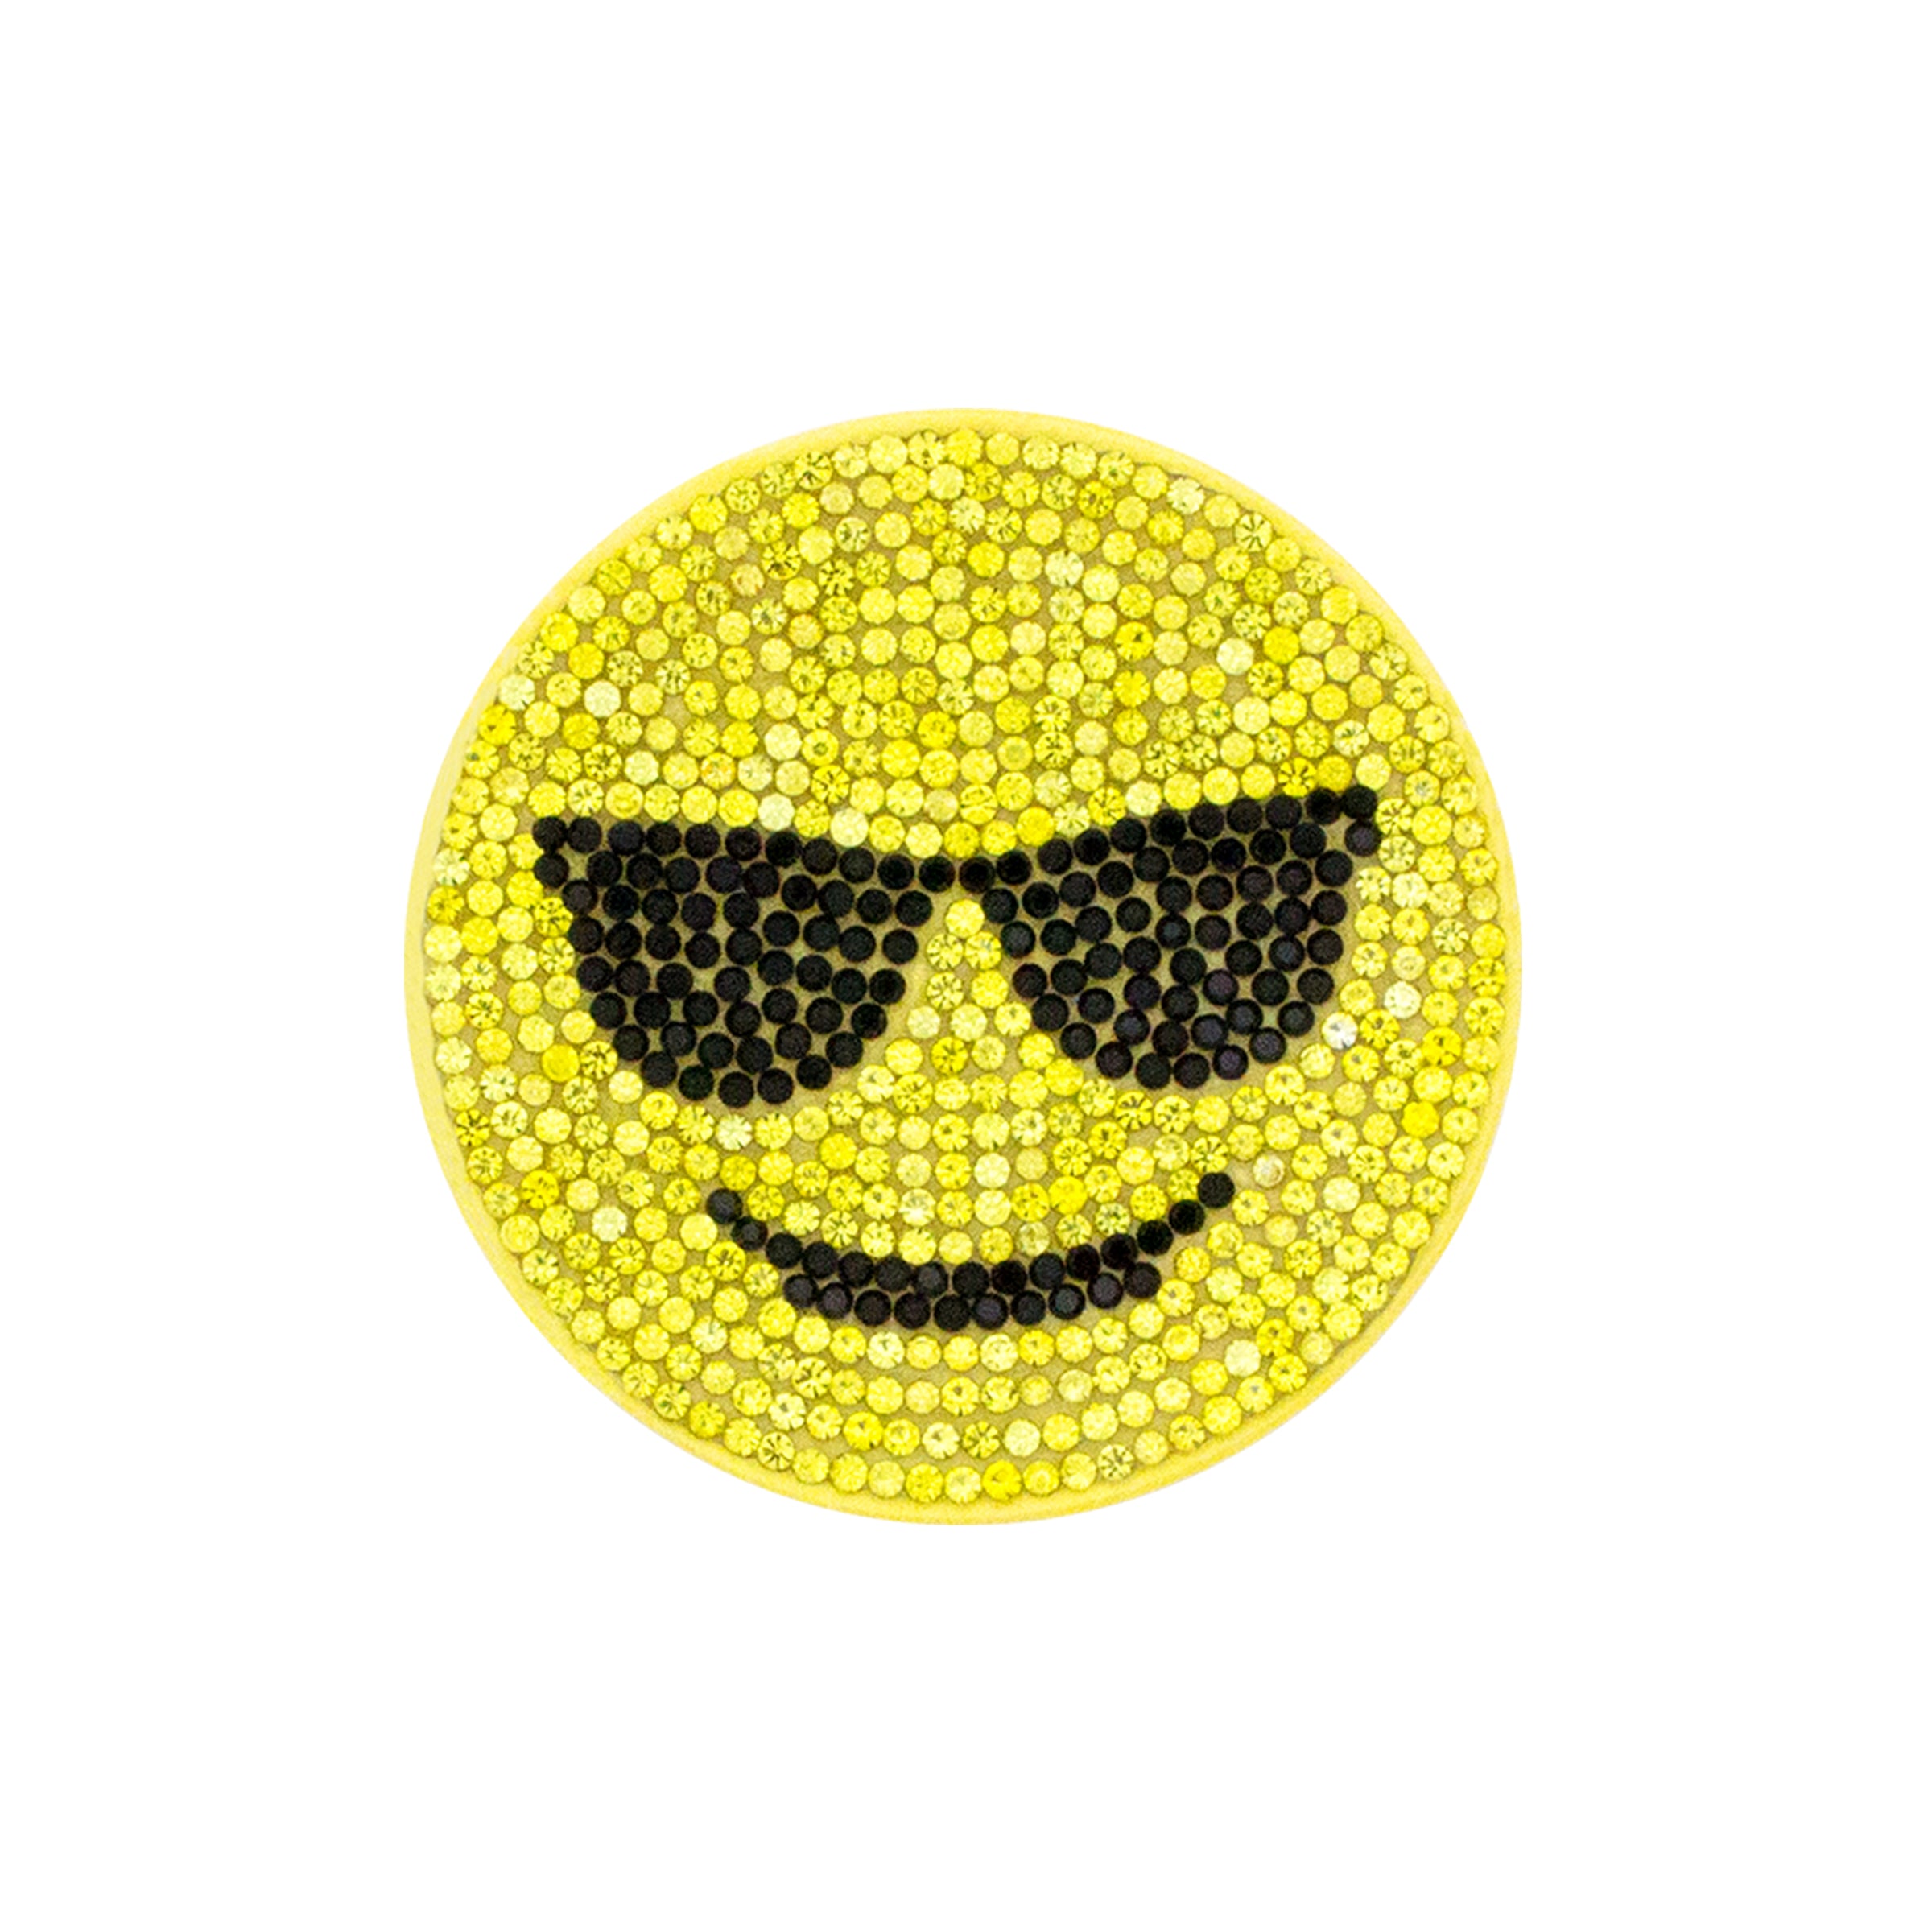 Emoji Plush Key Chain Hannukah Theme